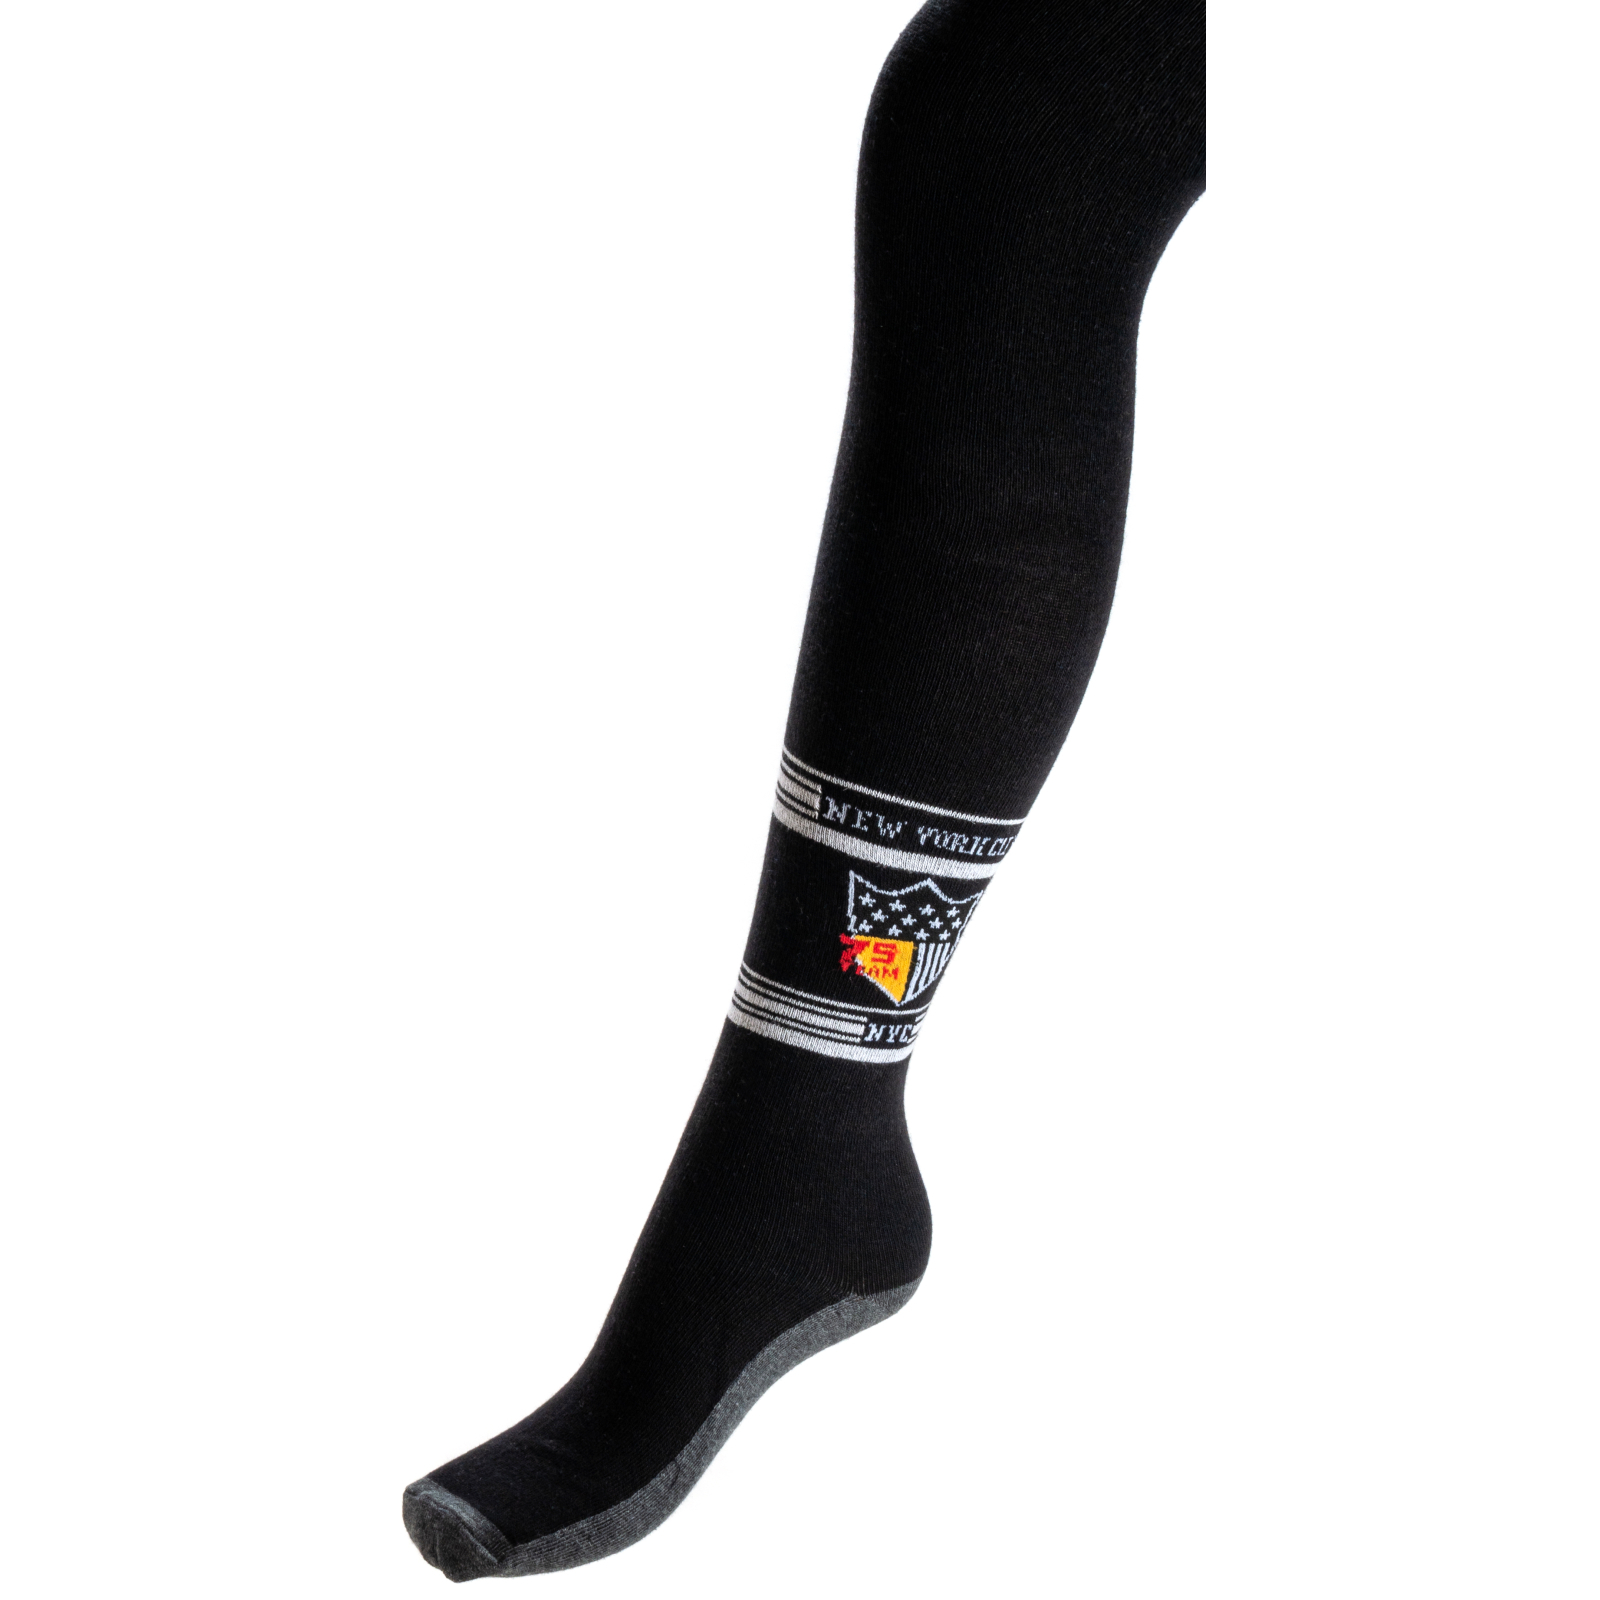 Колготки UCS Socks 79 років (M0C0301-2304-98B-gray)